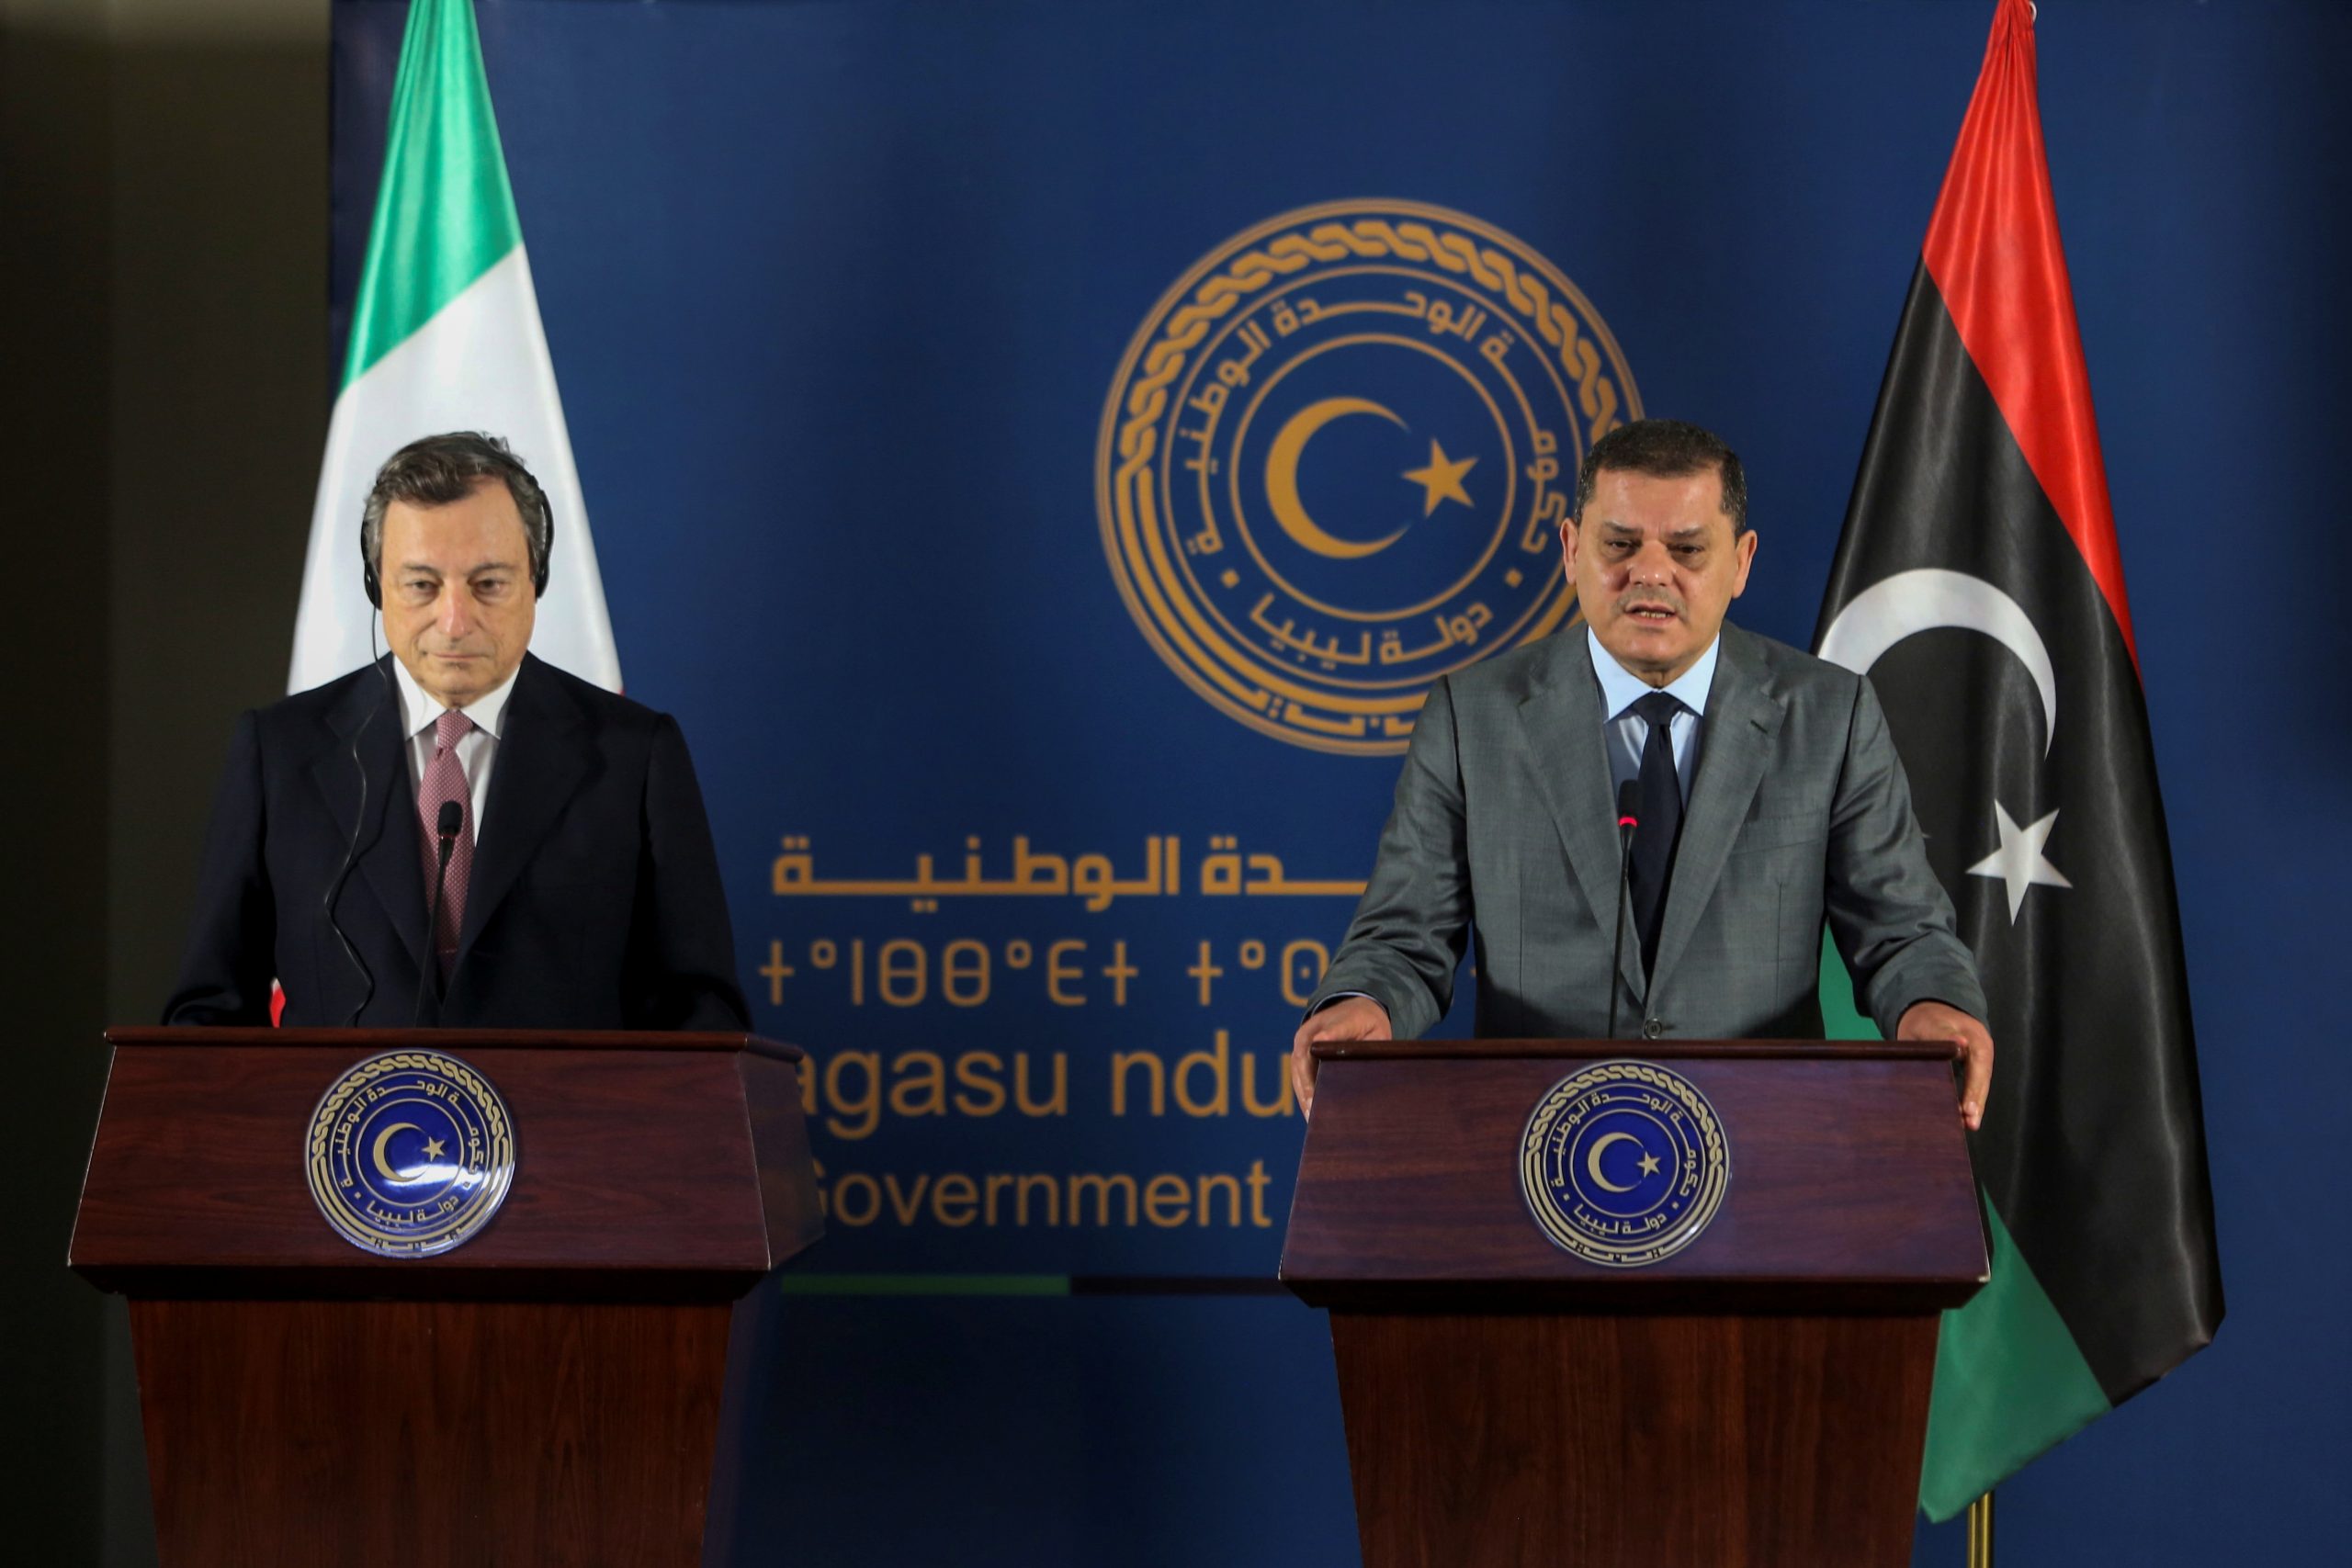 L’Italia ha ritrovato la via del ritorno in Libia